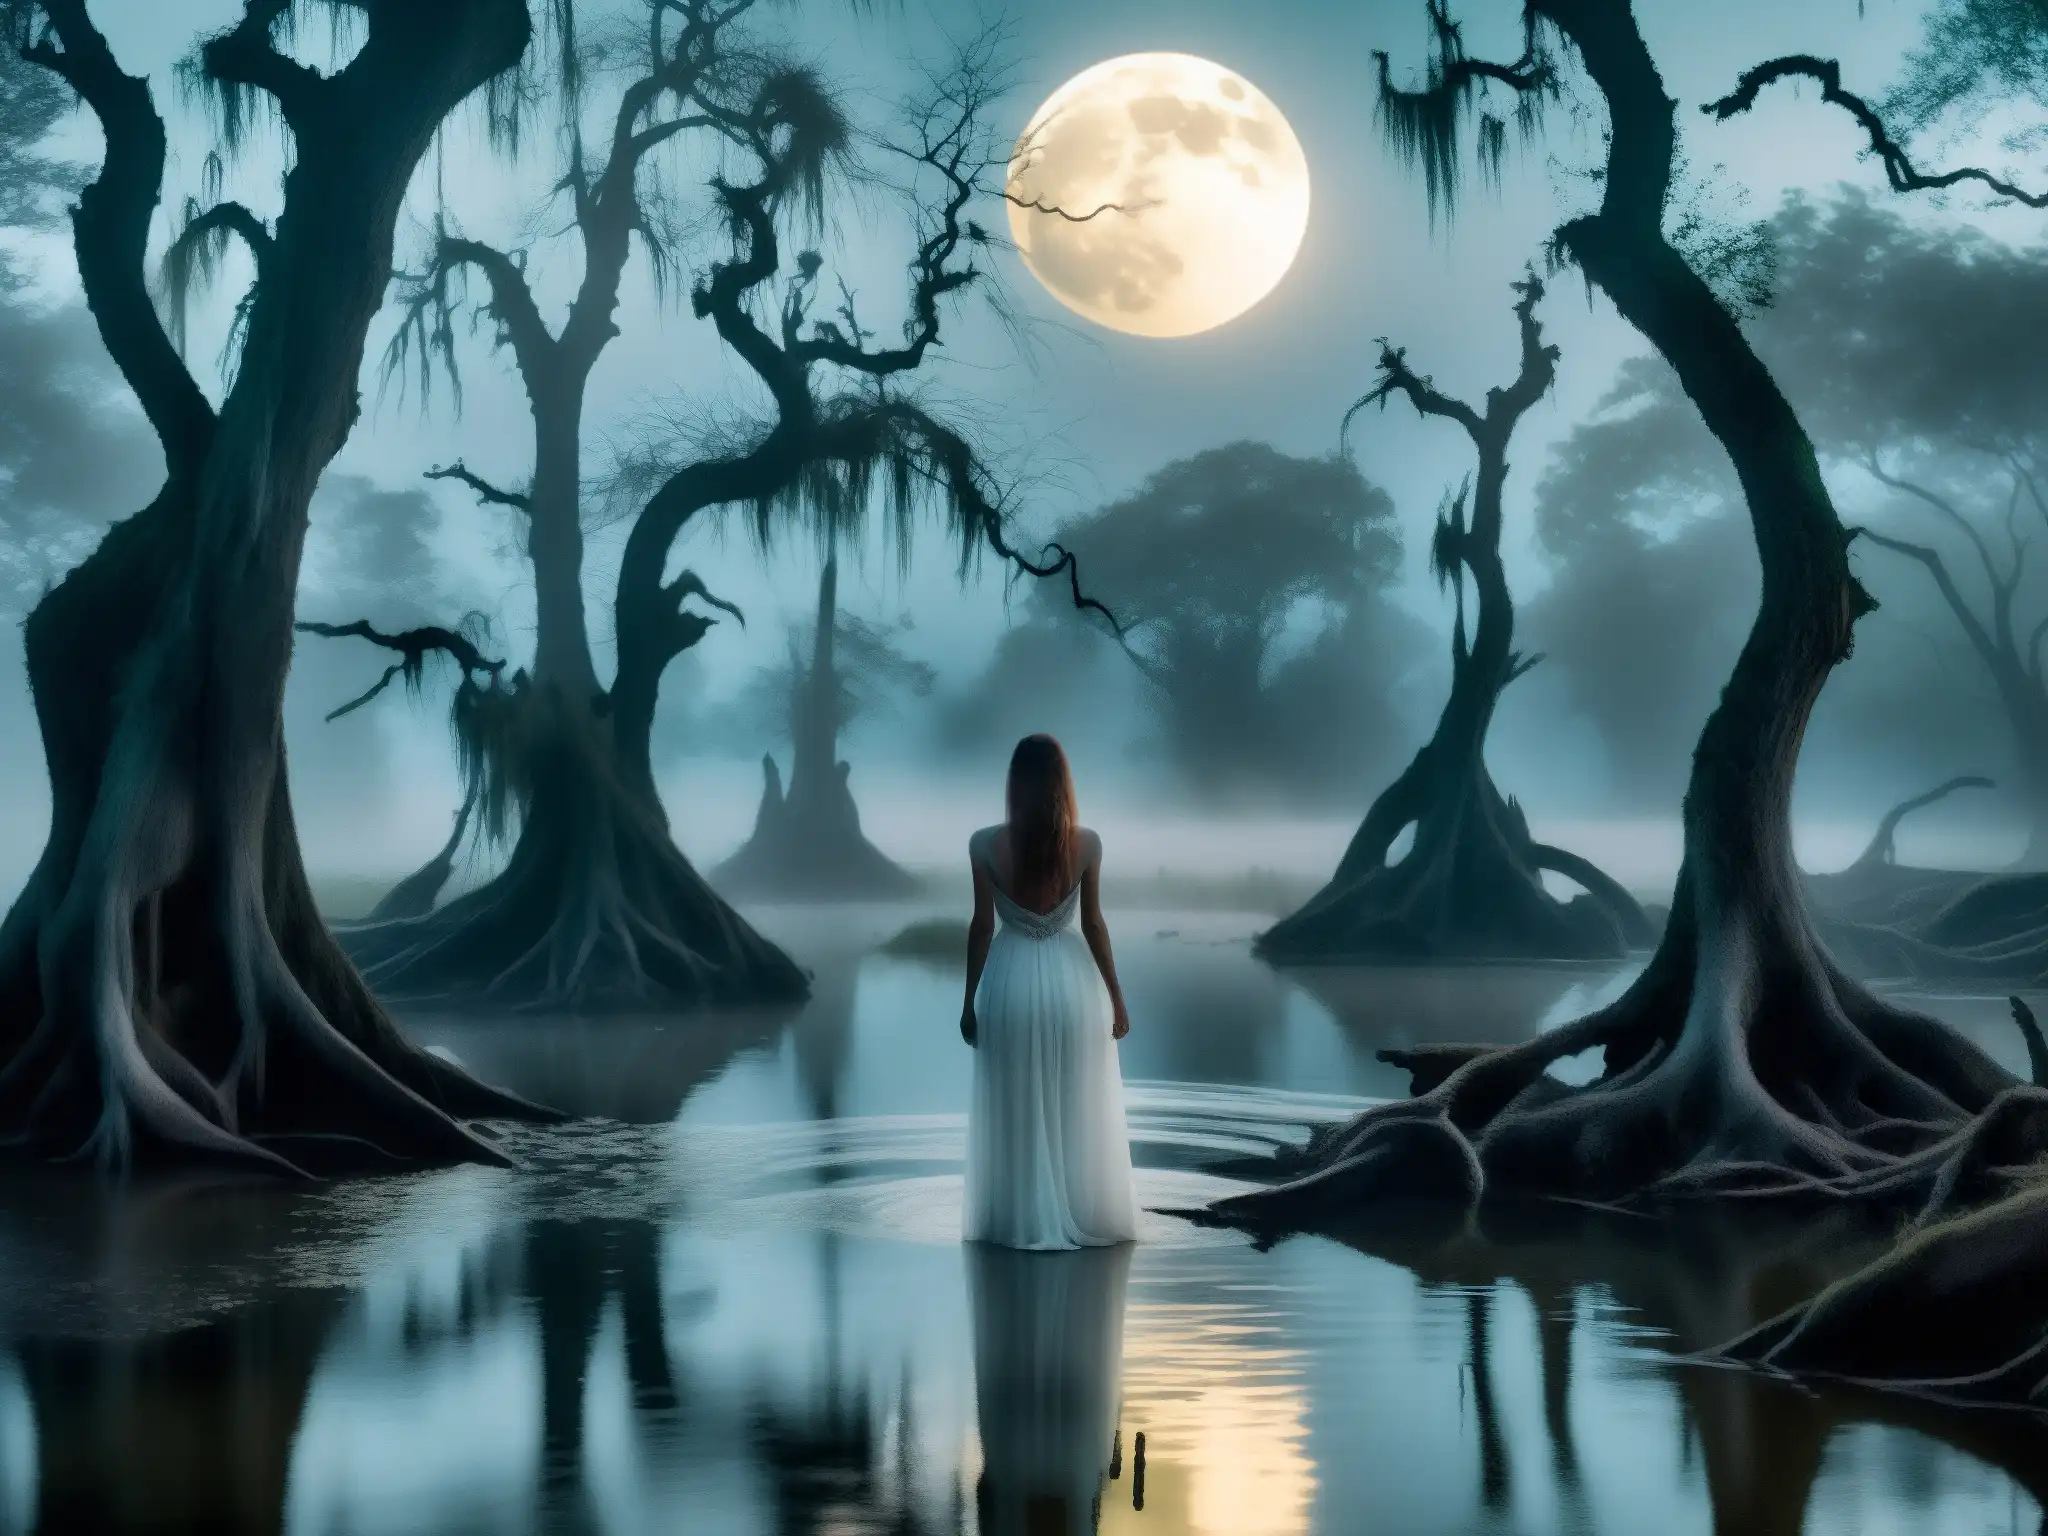 Una figura espectral llorando en un pantano iluminado por la luna